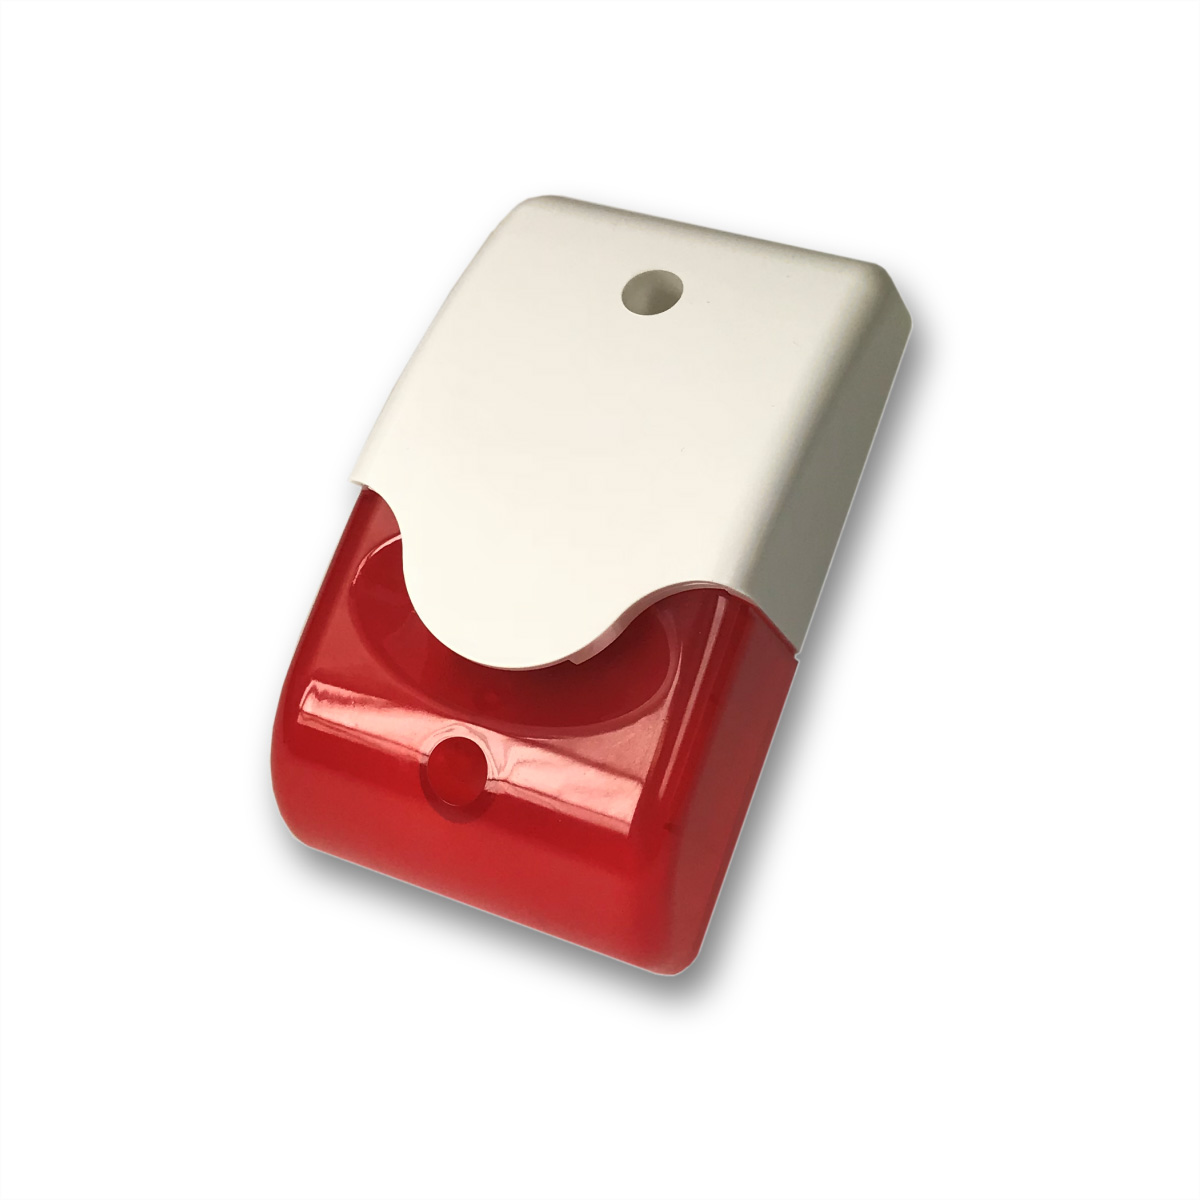 GUDE 7940 Kombi-Alarmgeber, optisch, akustisch, rot